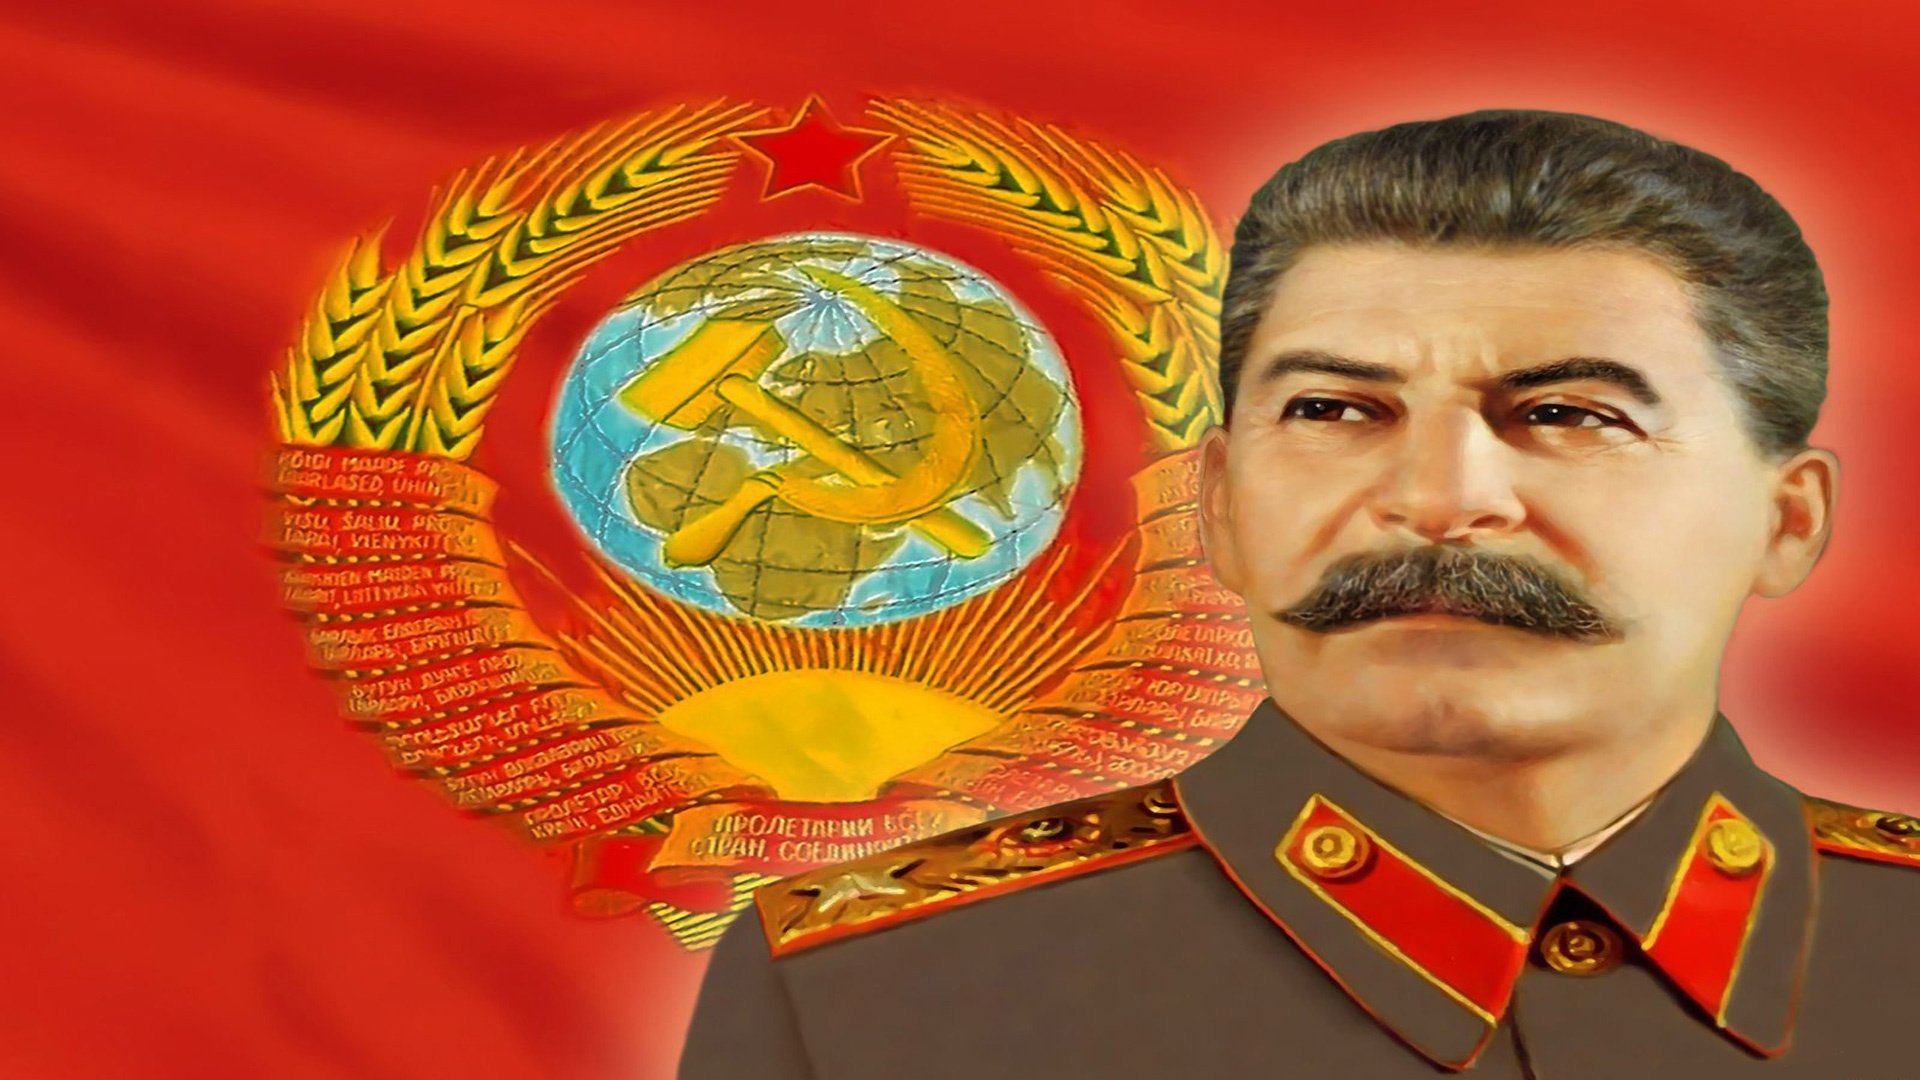 Сталин на фоне флага ссср